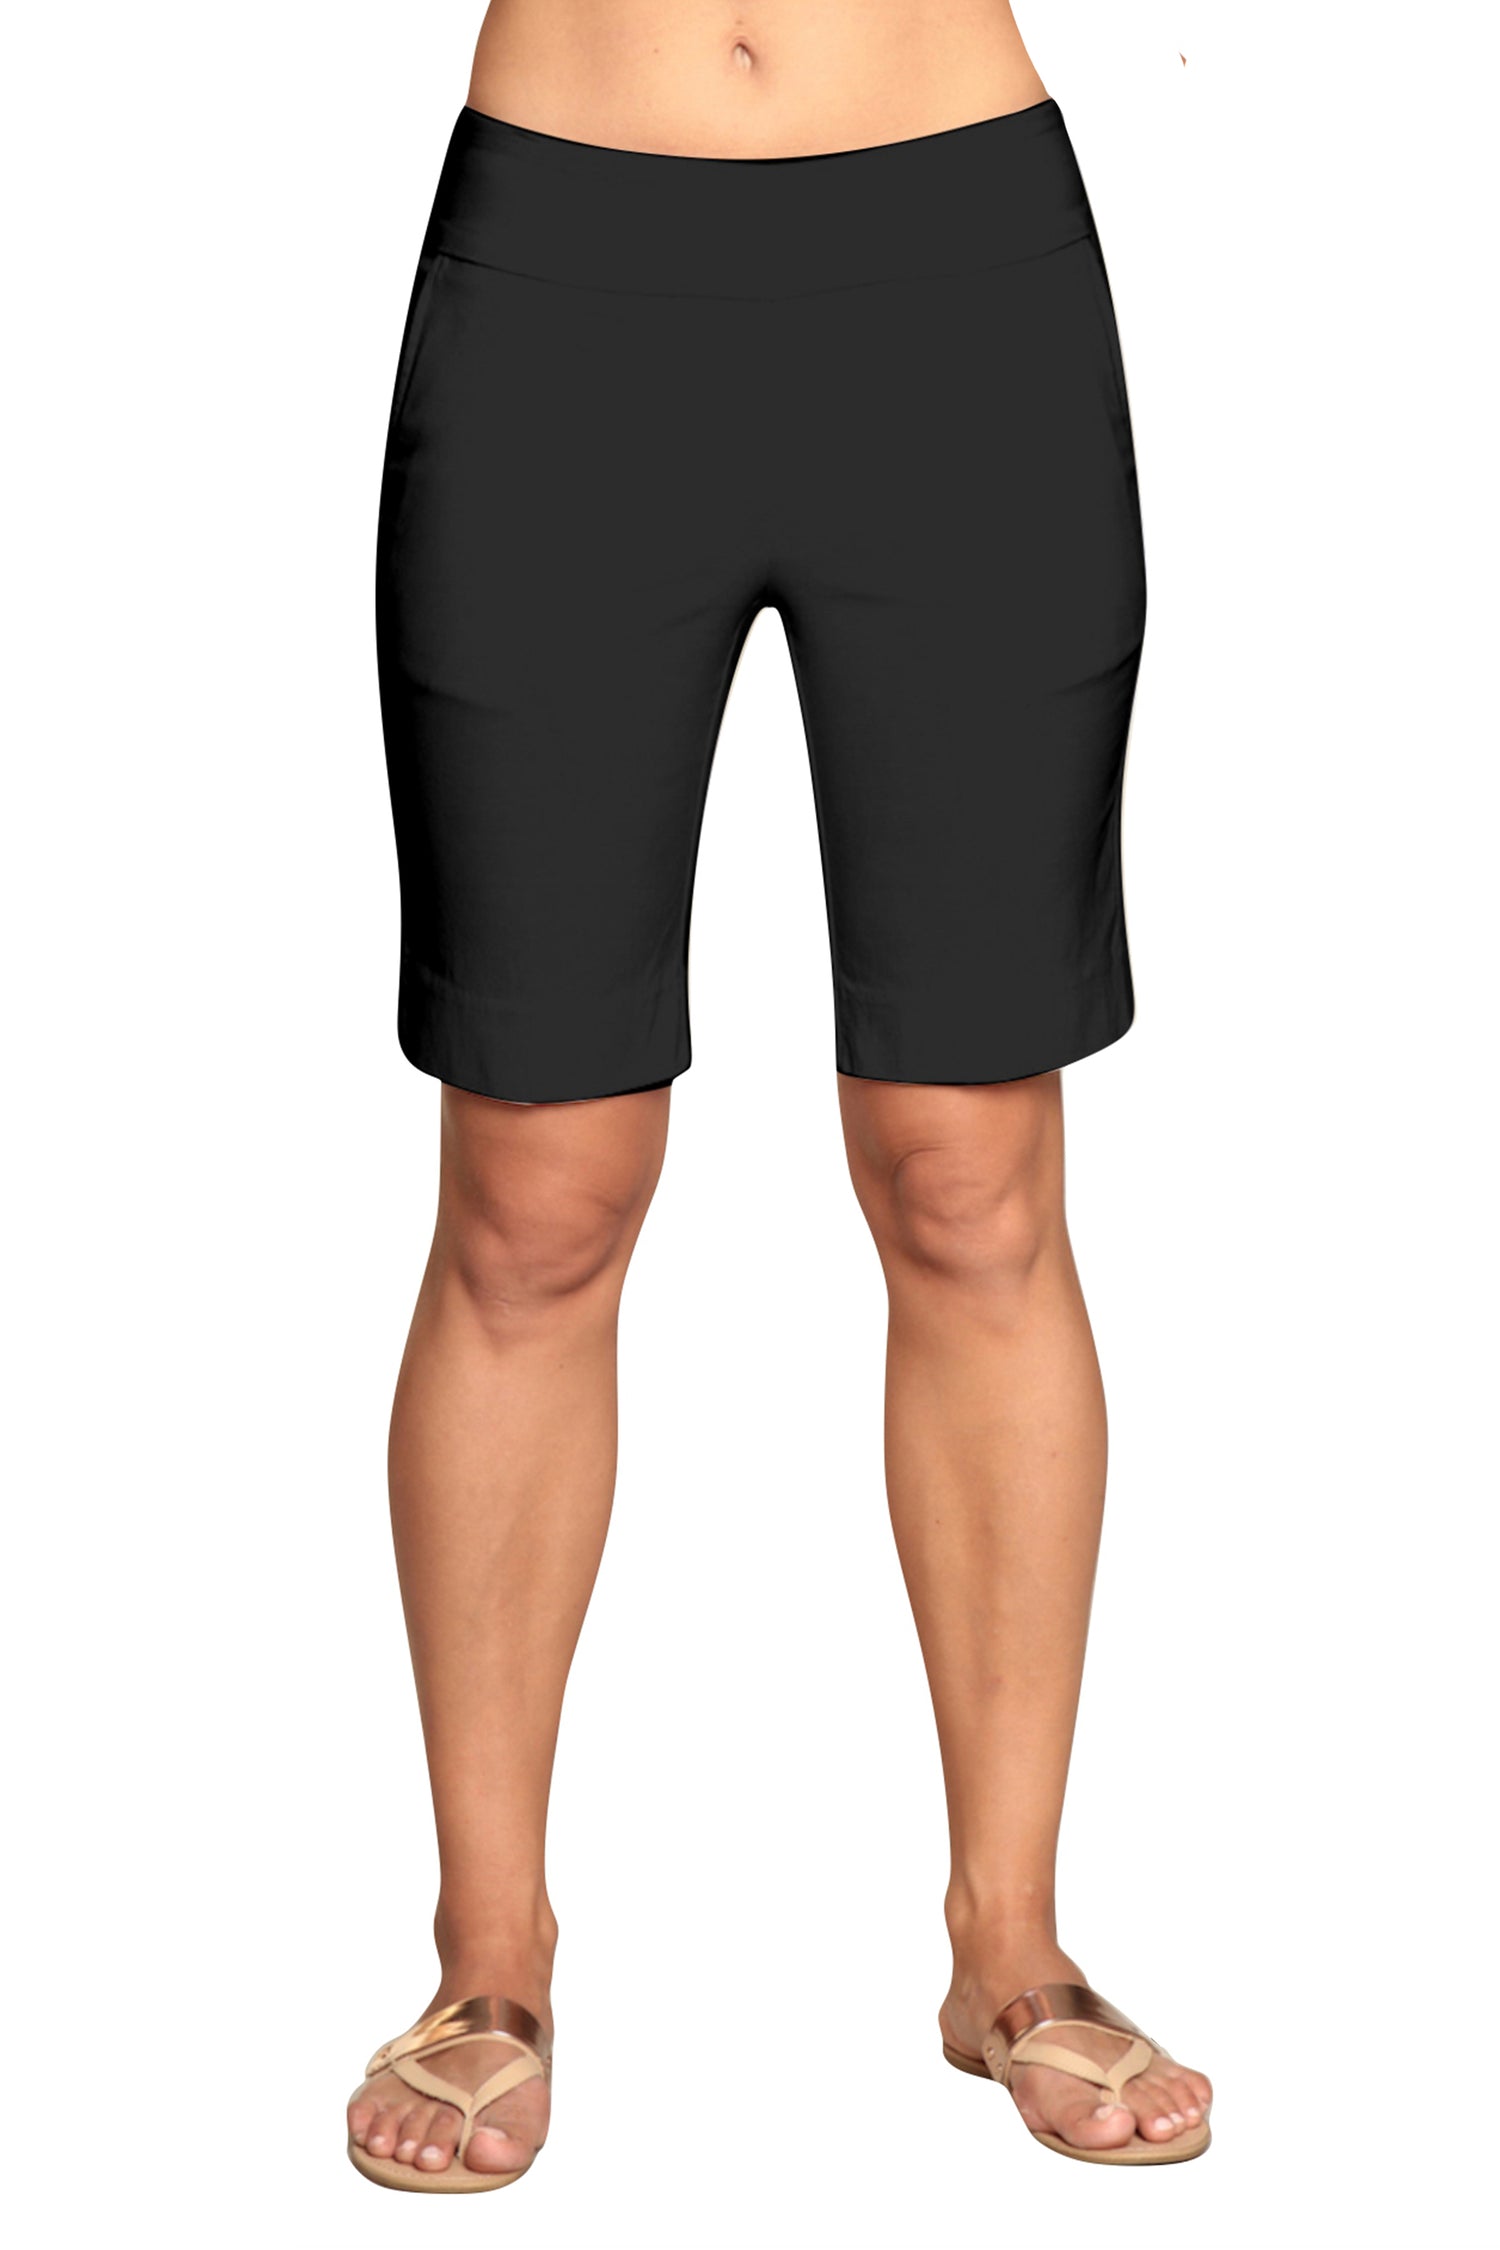 golf shorts women